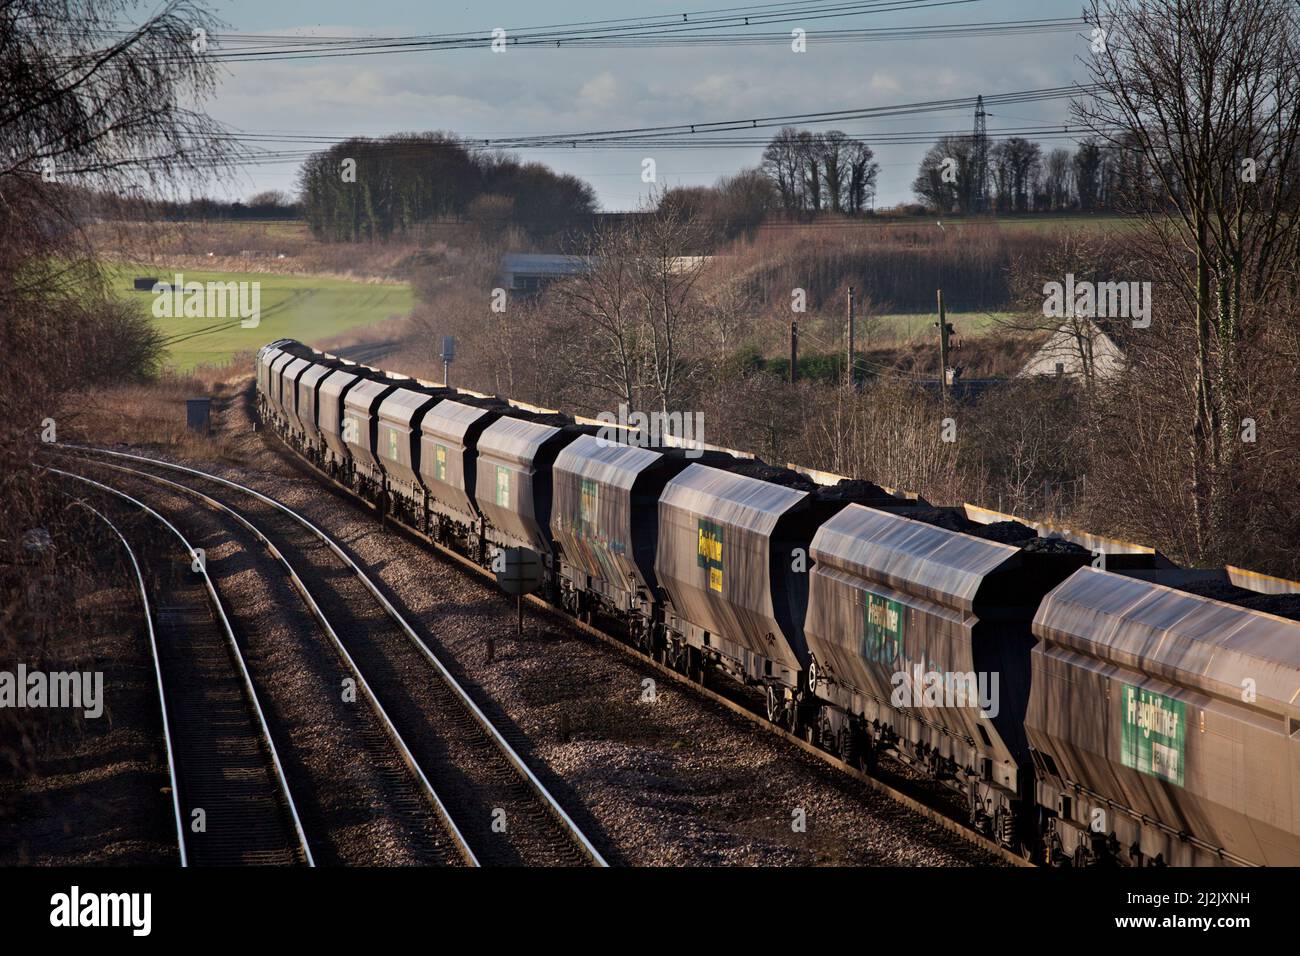 Burton Salmon, Yorkshire, Freightliner Merry, prenez un train de charbon rond en direction de l'ouest Banque D'Images